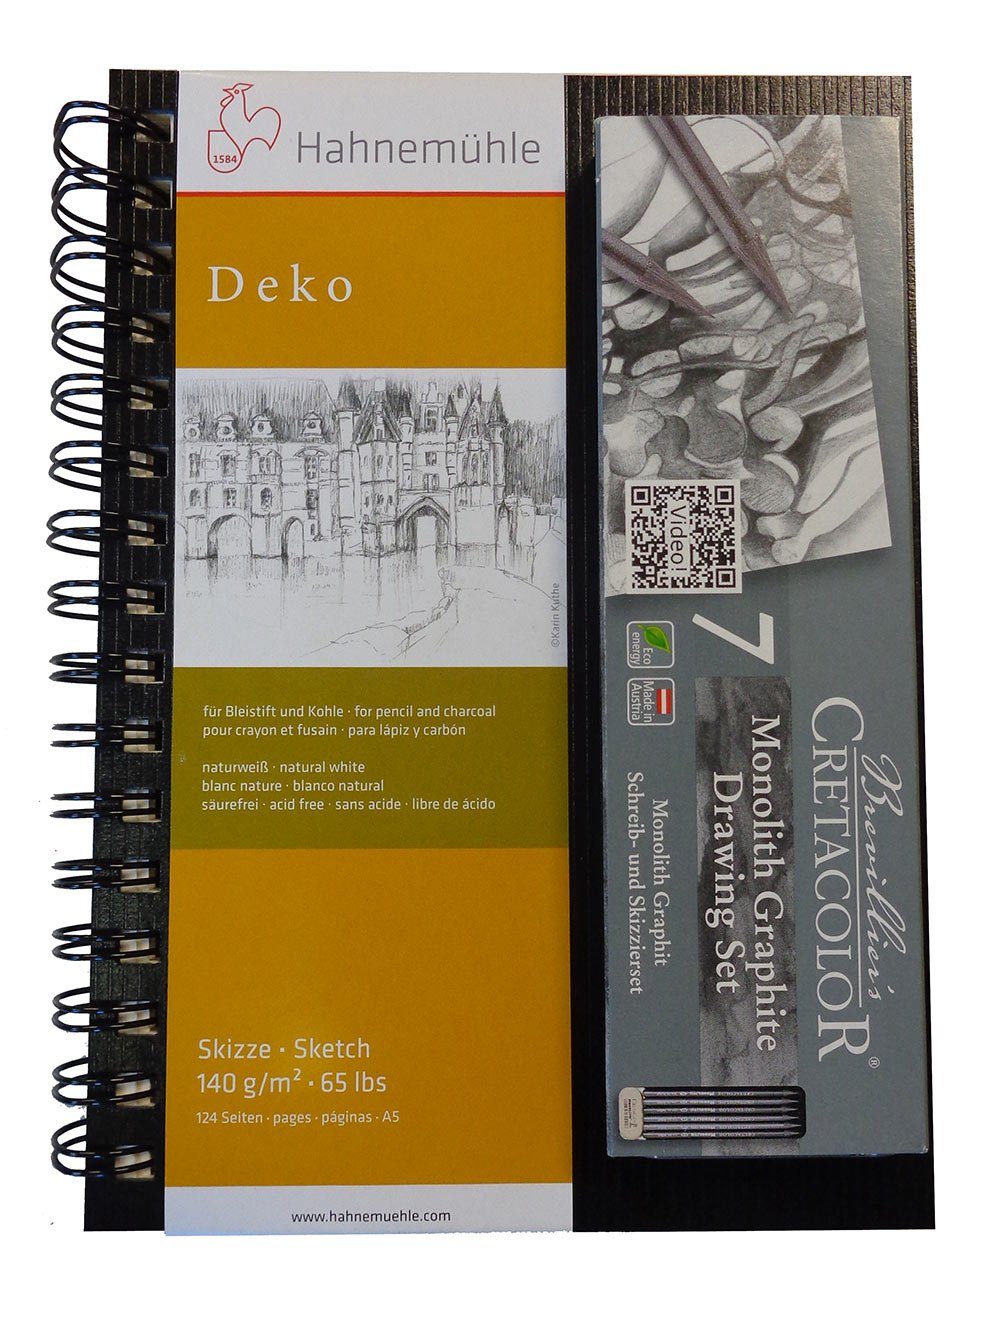 Brevilliers Cretacolor Bleistift 204 99, 7-teiliges Monolith Graphite Drawing Set + Skizzenbuch, für Zeichnungen mit Bleistift & Kohle - Made in Austria